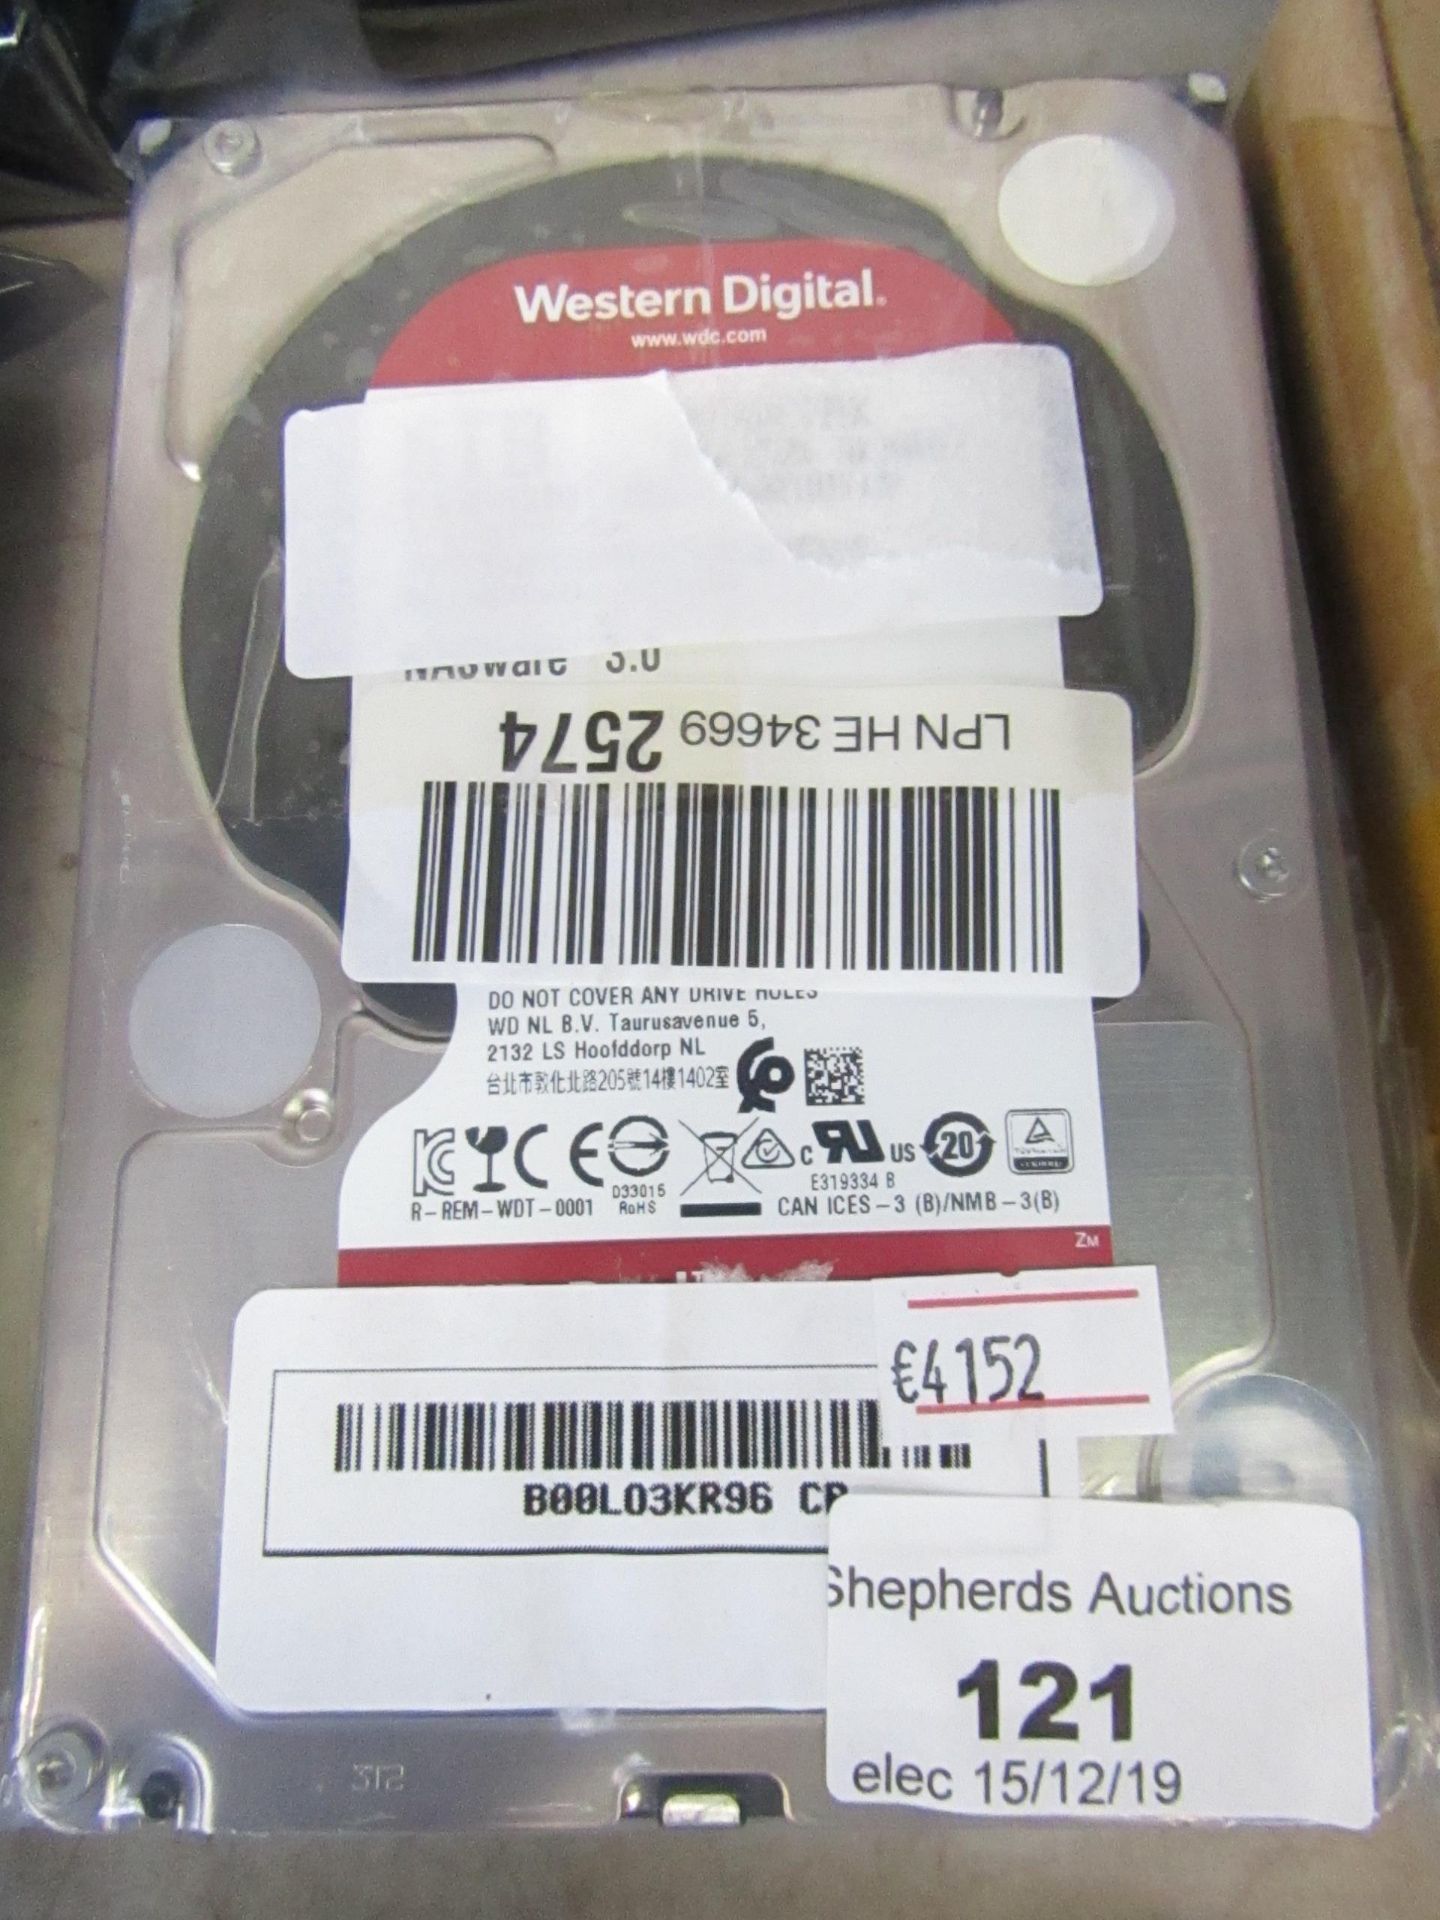 Western Digital 6TB Hard drive, untested.